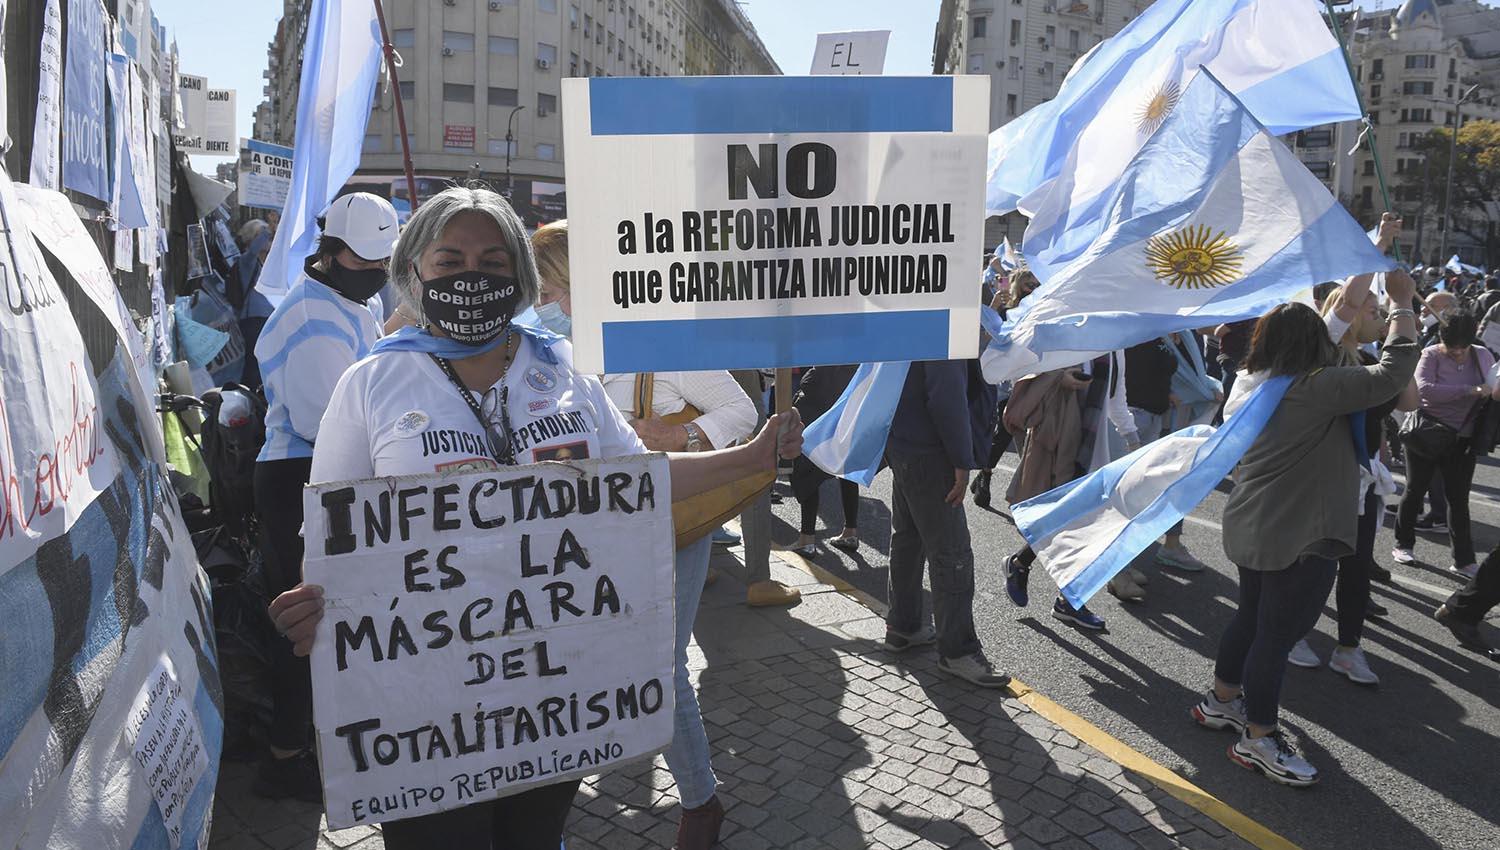 CRÍTICAS. Los manifestantes reprocharon diversas políticas ejecutadas por el Gobierno nacional, y se ensañaron contra la vicepresidenta, Cristina Fernández.